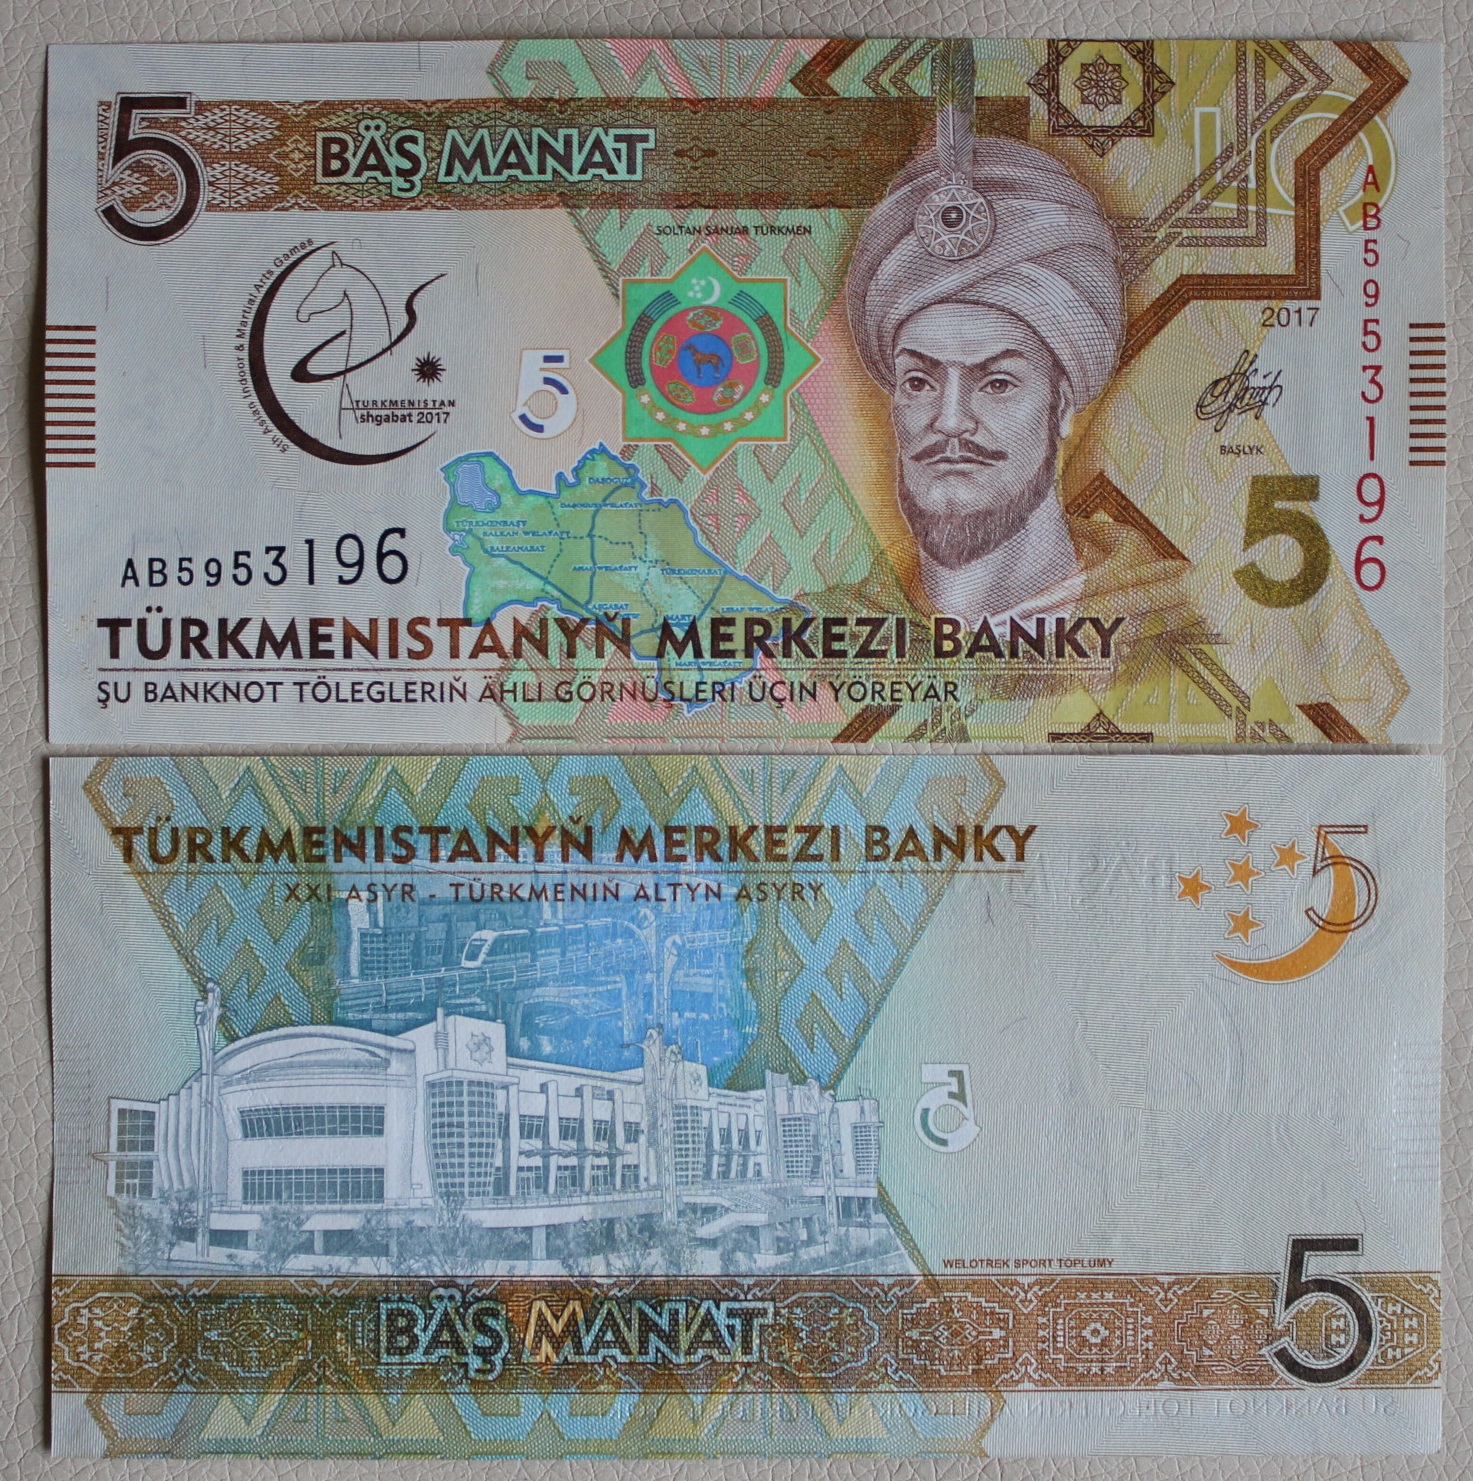 300 манат в рублях на сегодня. Банкноты Туркмении 5 манат. 1 Манат Туркменистан. Банкнота туркменский манат. Современные банкноты Туркменистана.